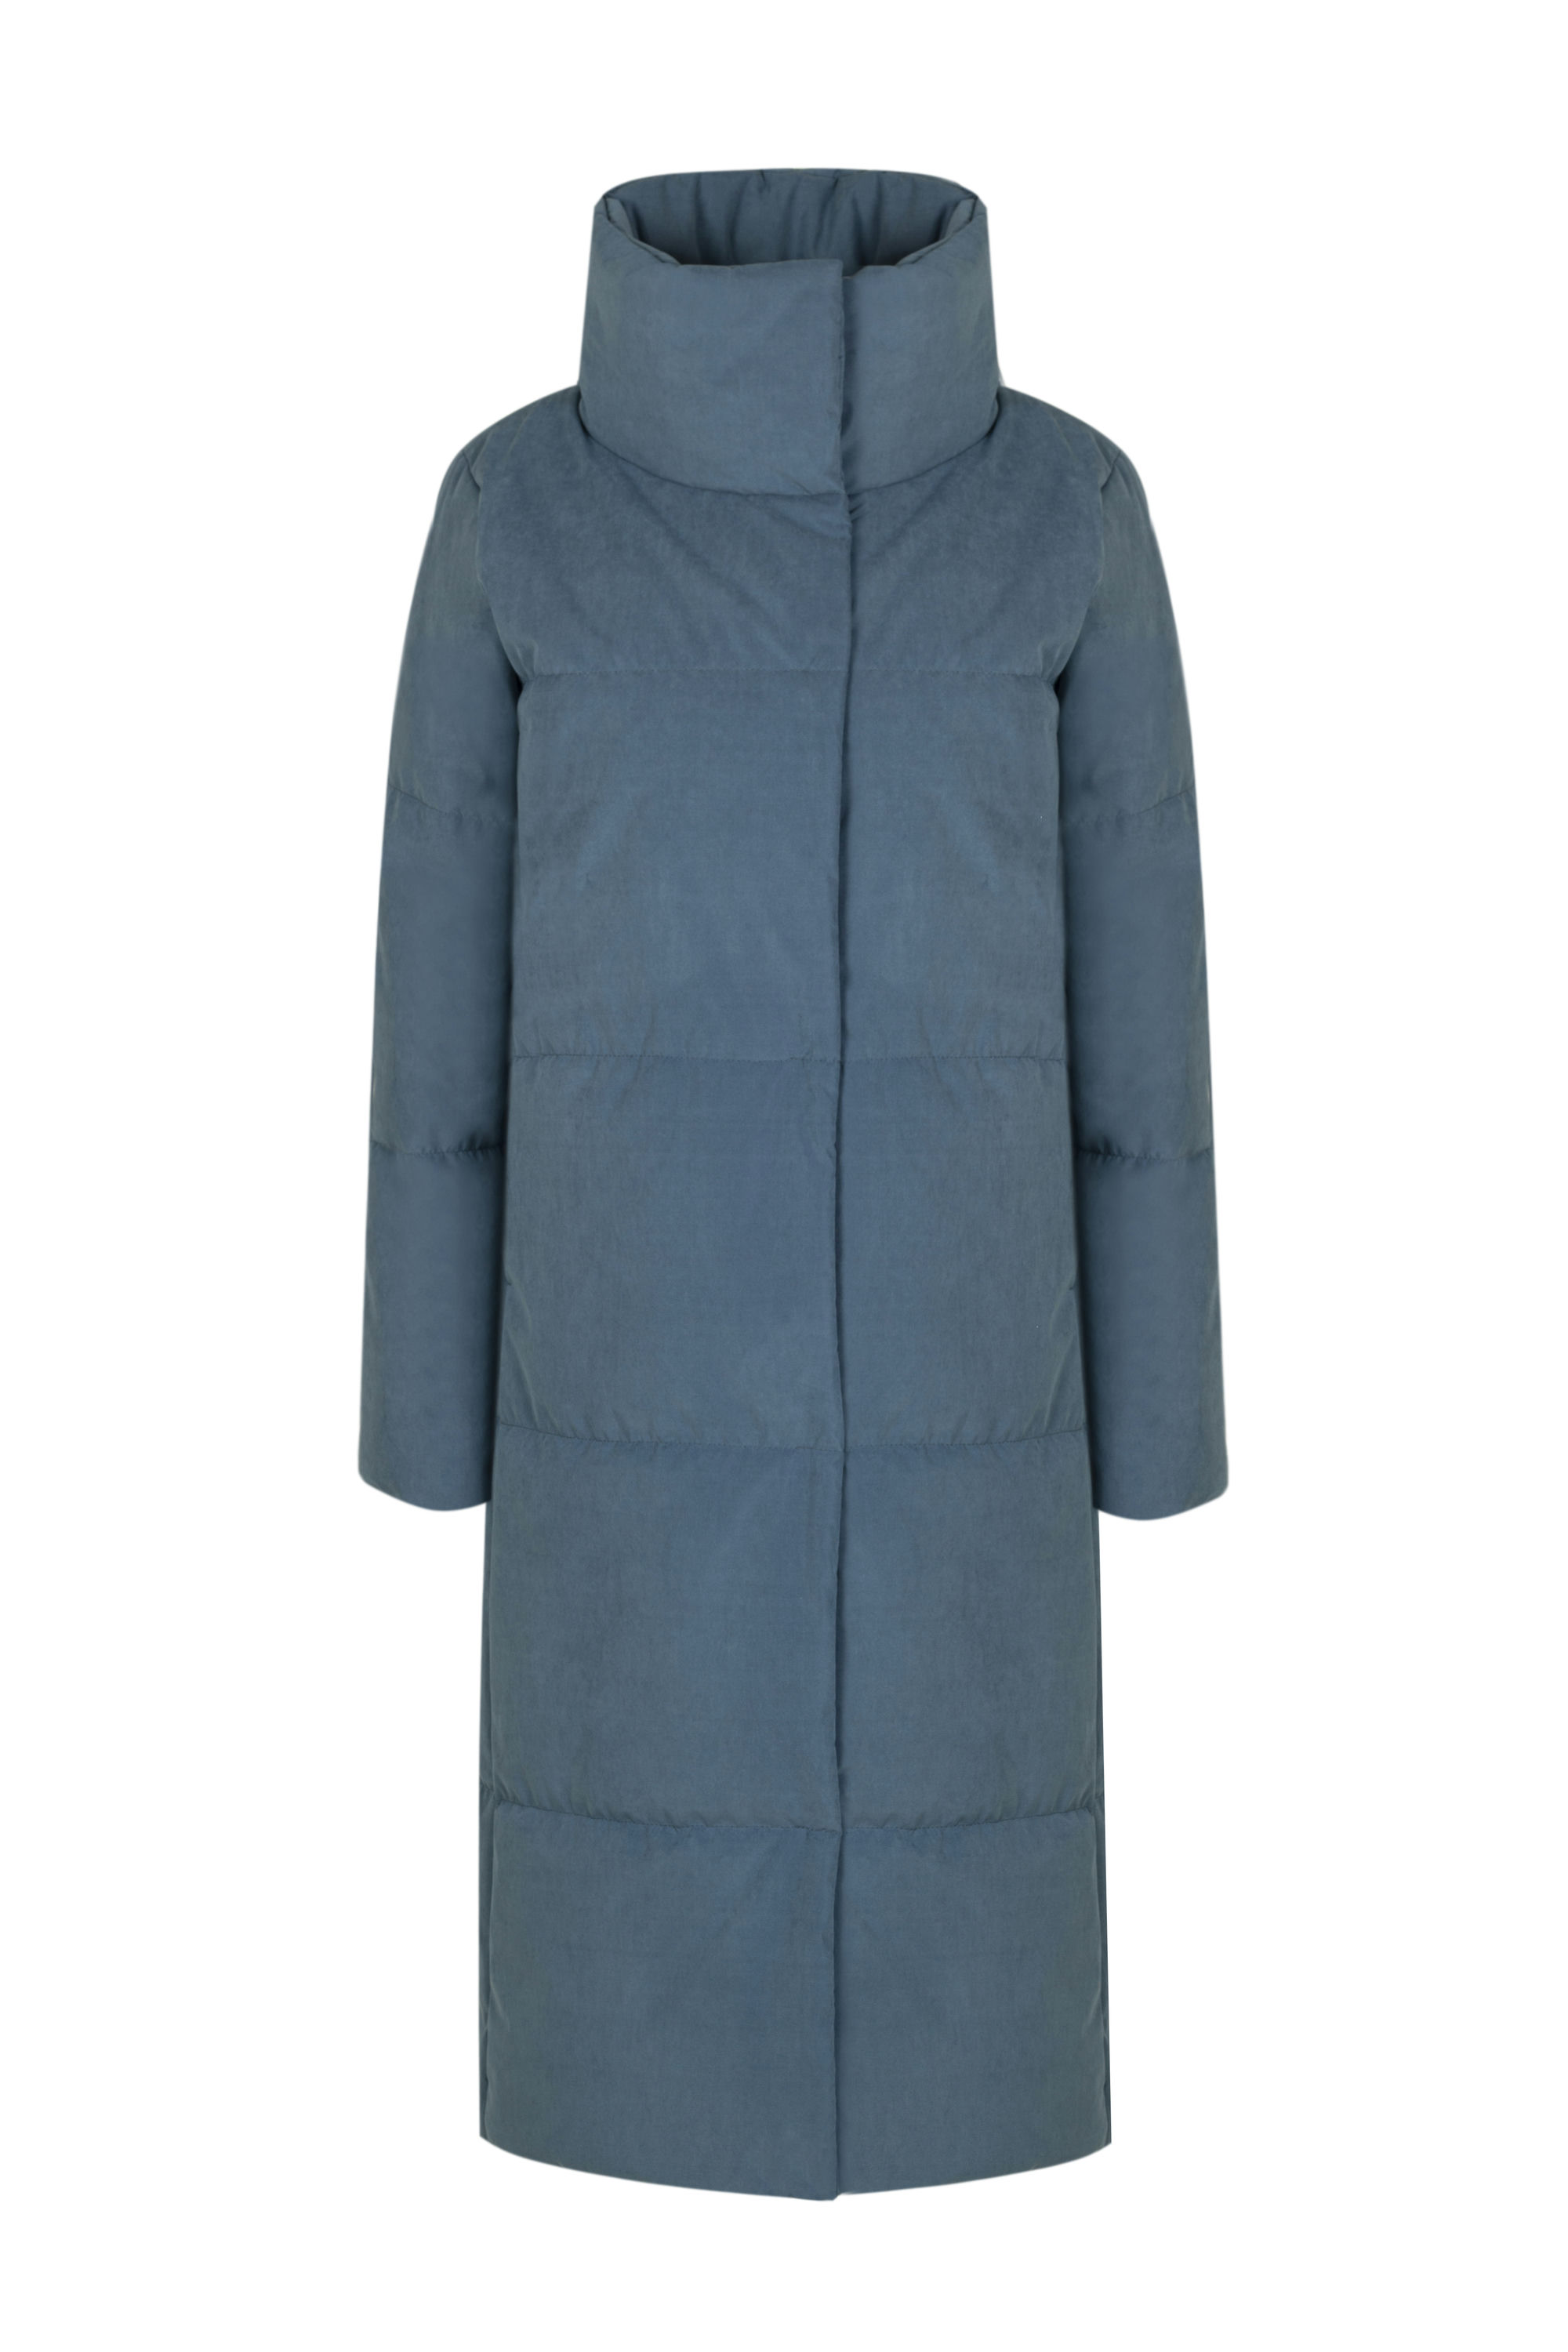 Пальто женское плащевое утепленное 5-12802-1. Фото 1.